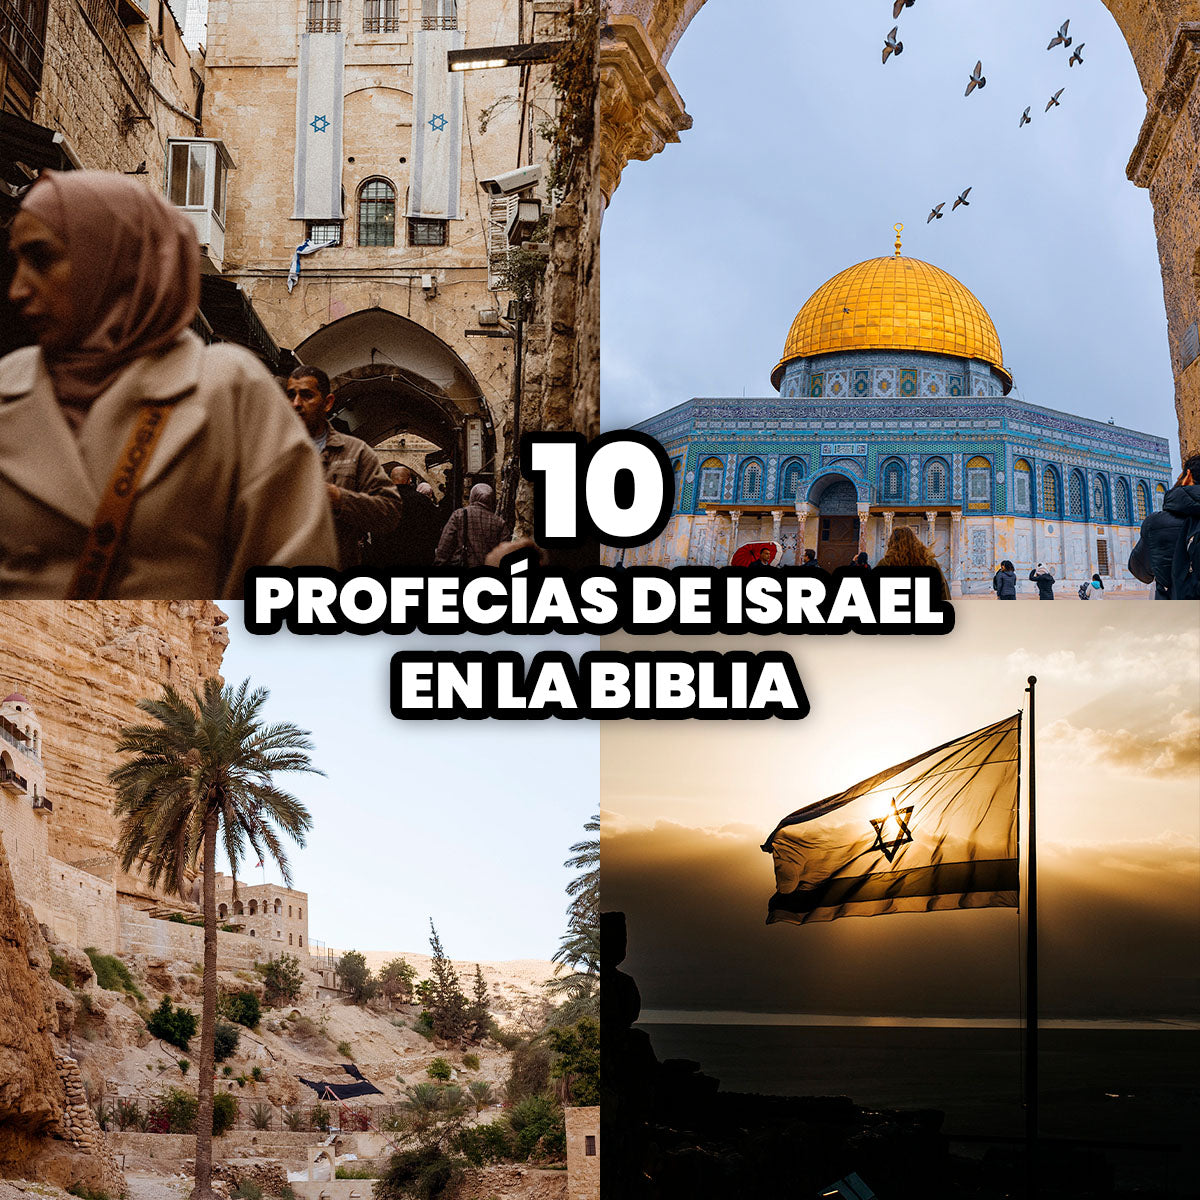 Las 10 Profecías de Israel en la Biblia